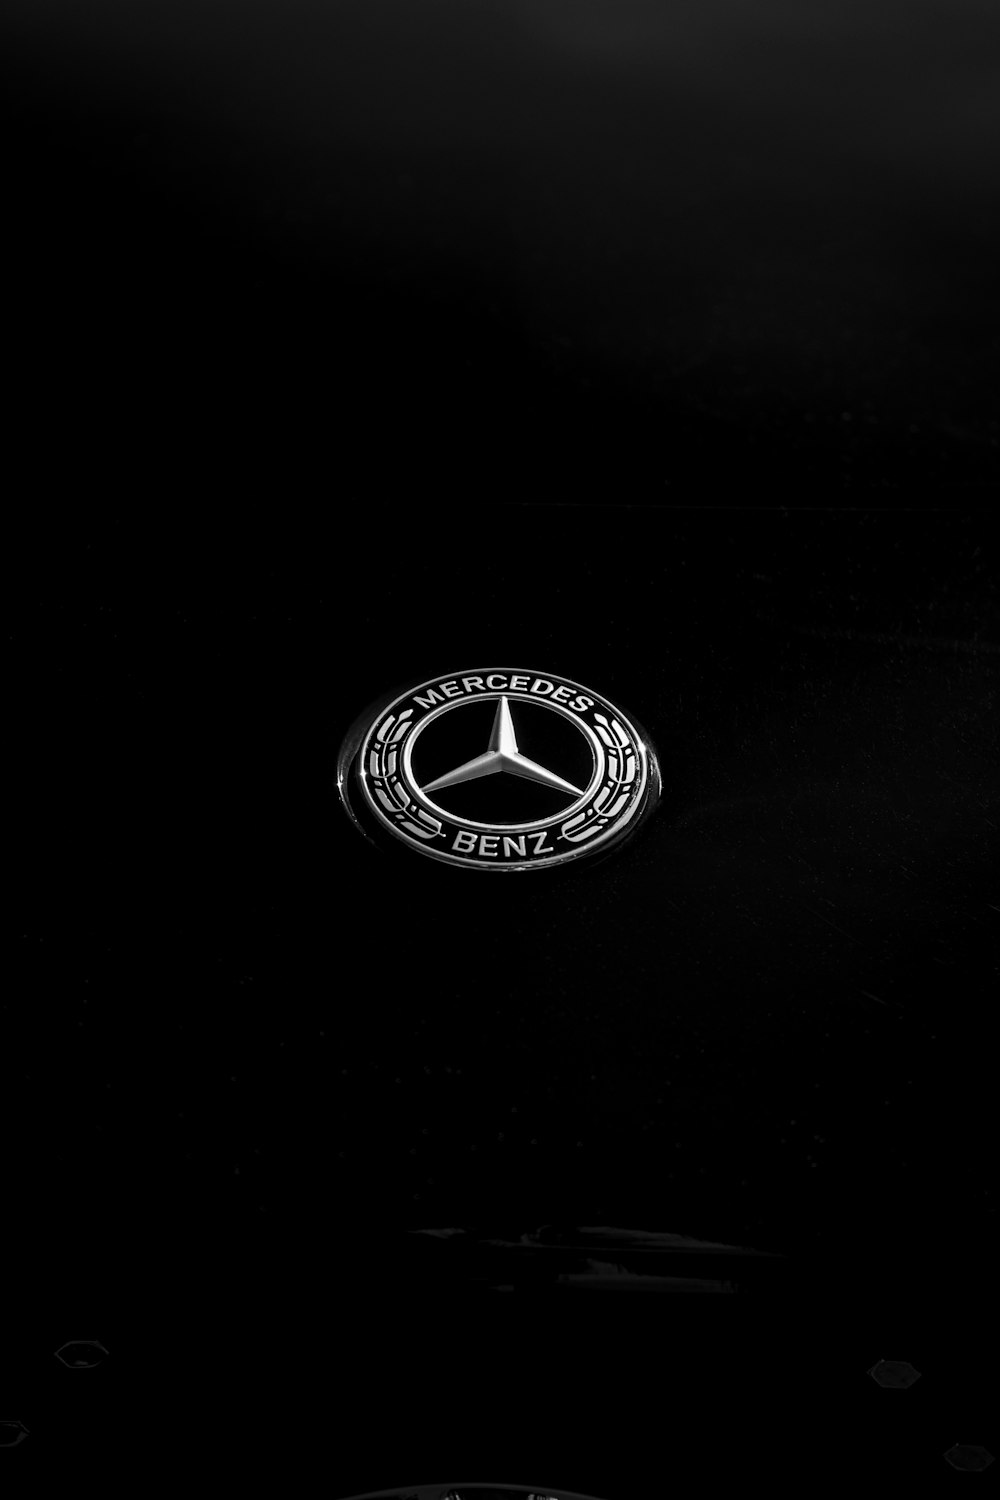 Un emblema Mercedes è mostrato al buio